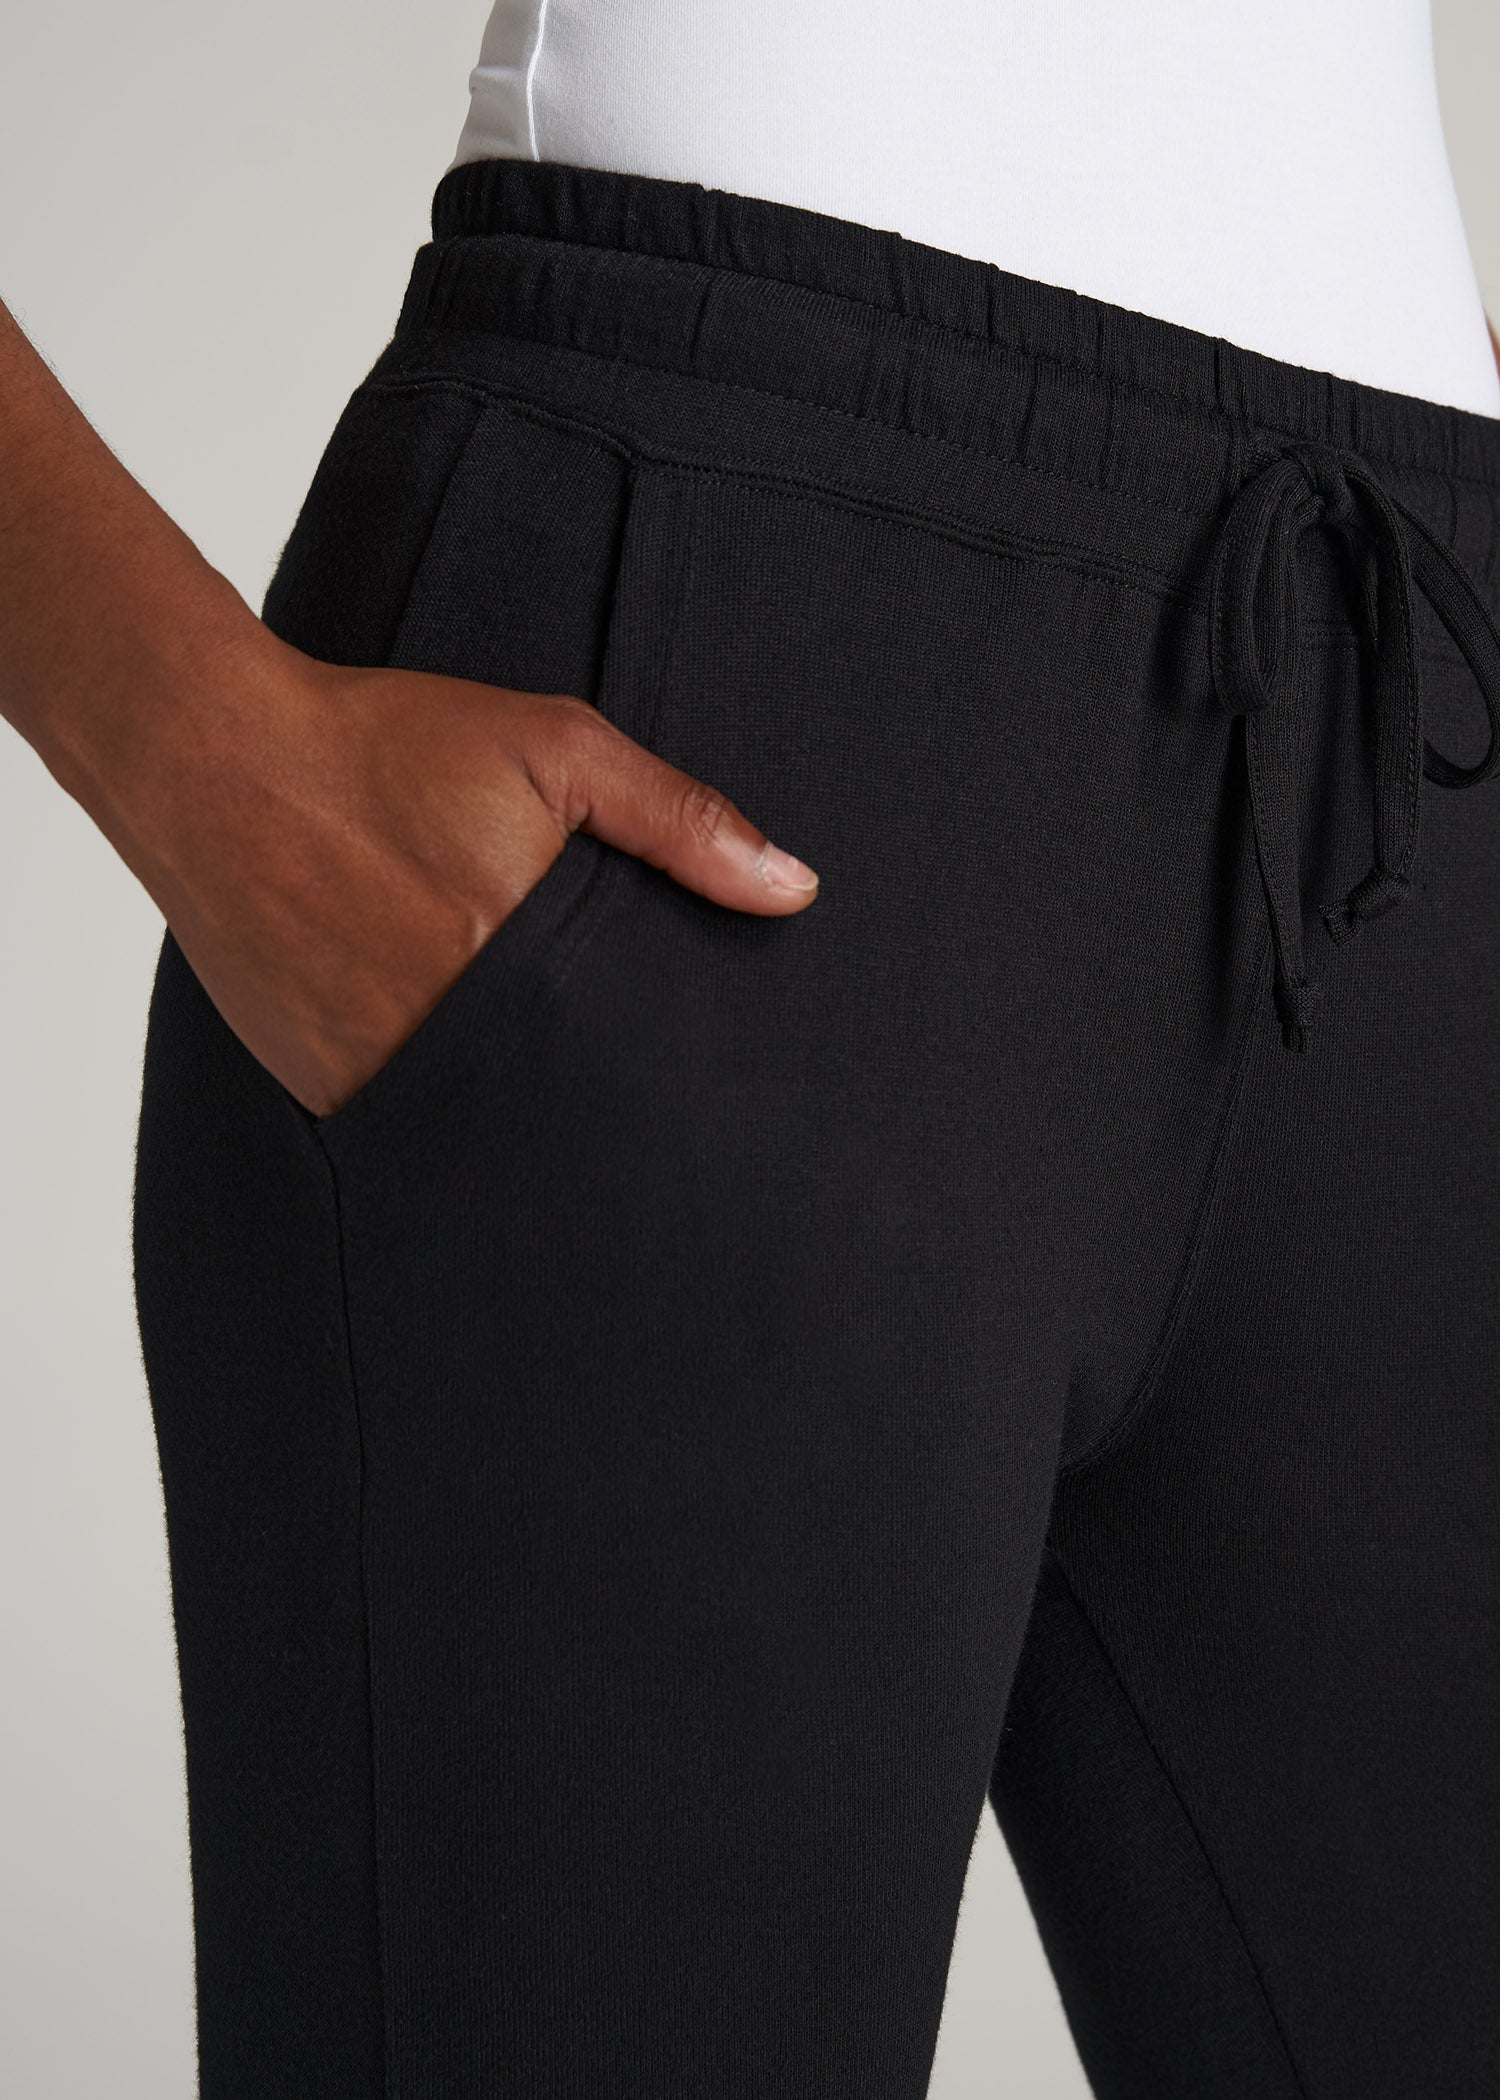 Women's Lounge Pants